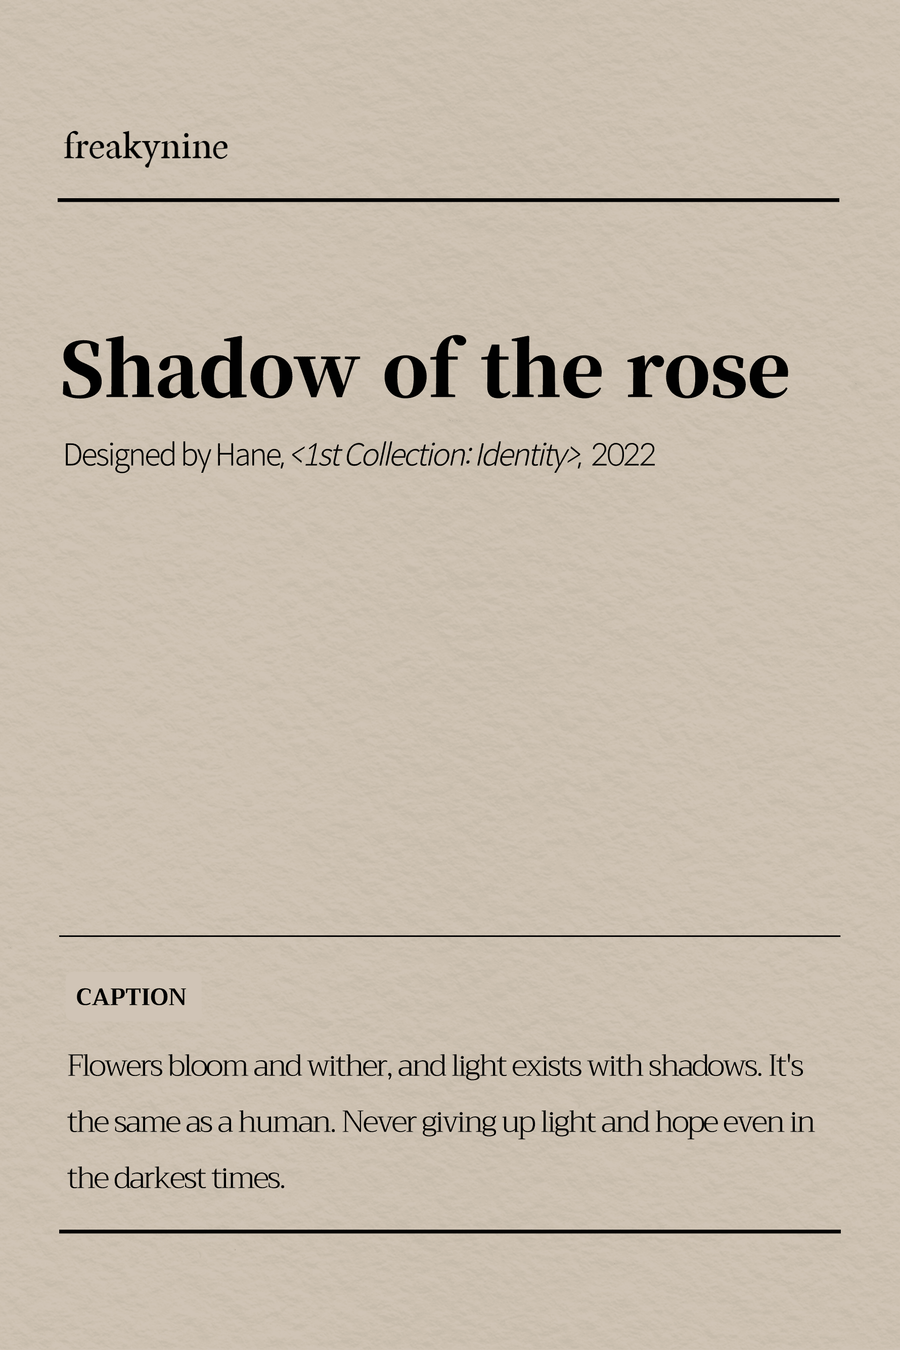 (Hane) Shadow of the rose (2EA) - freakynine